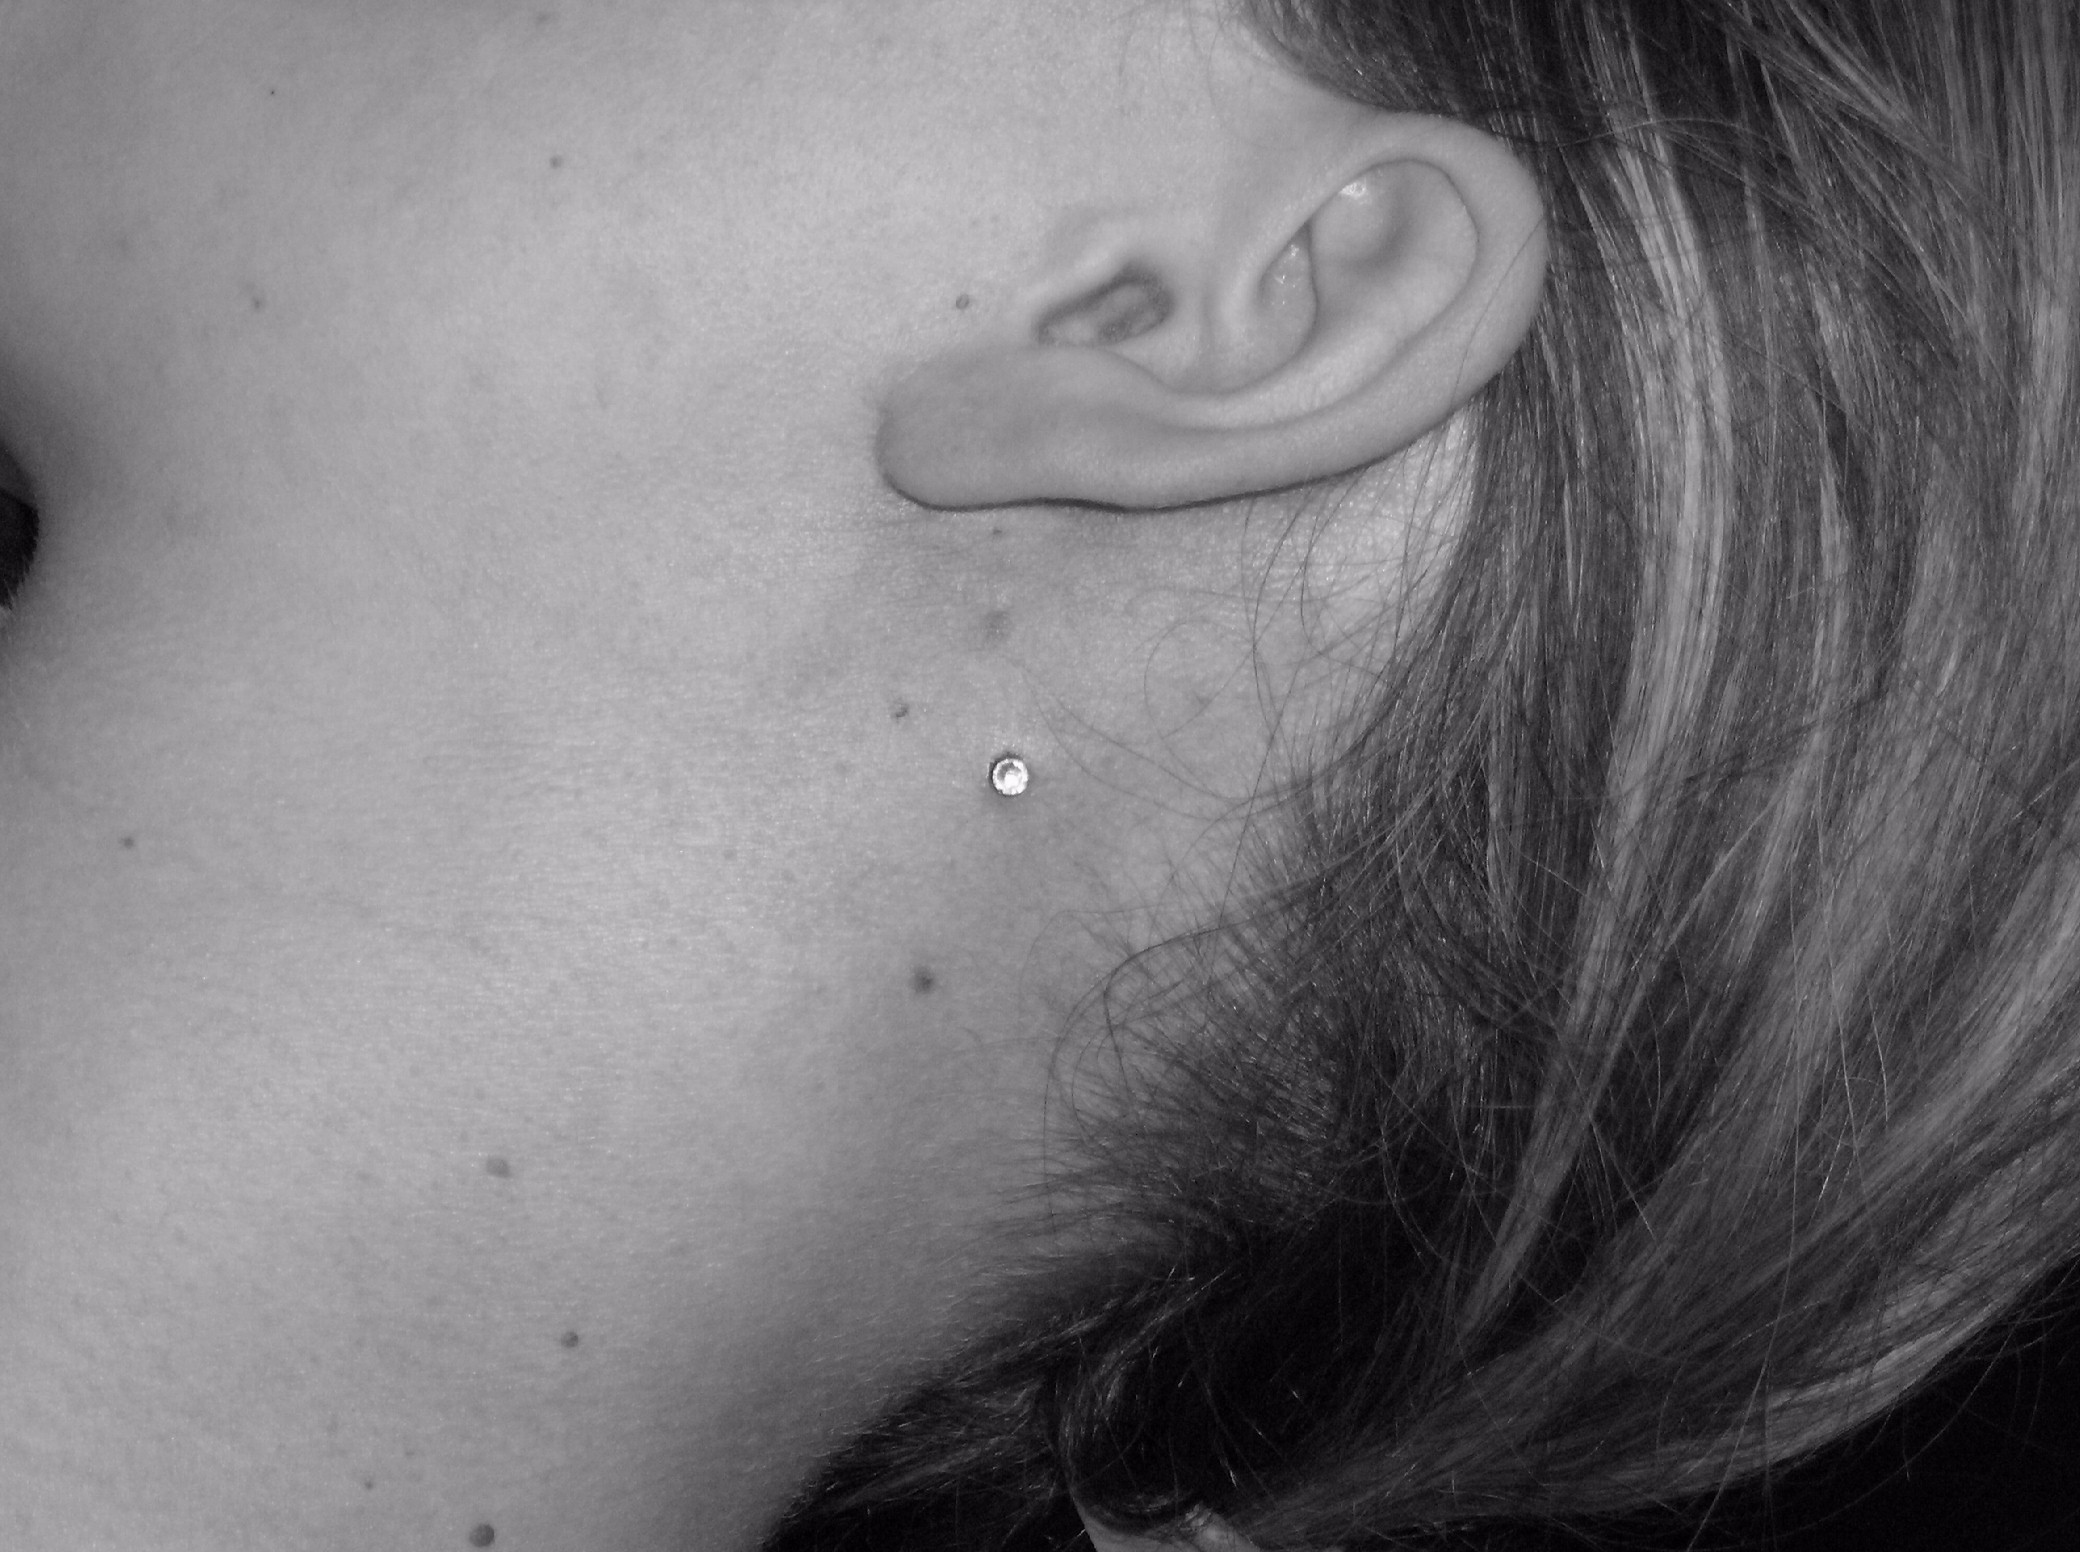 dermal piercing behind ear